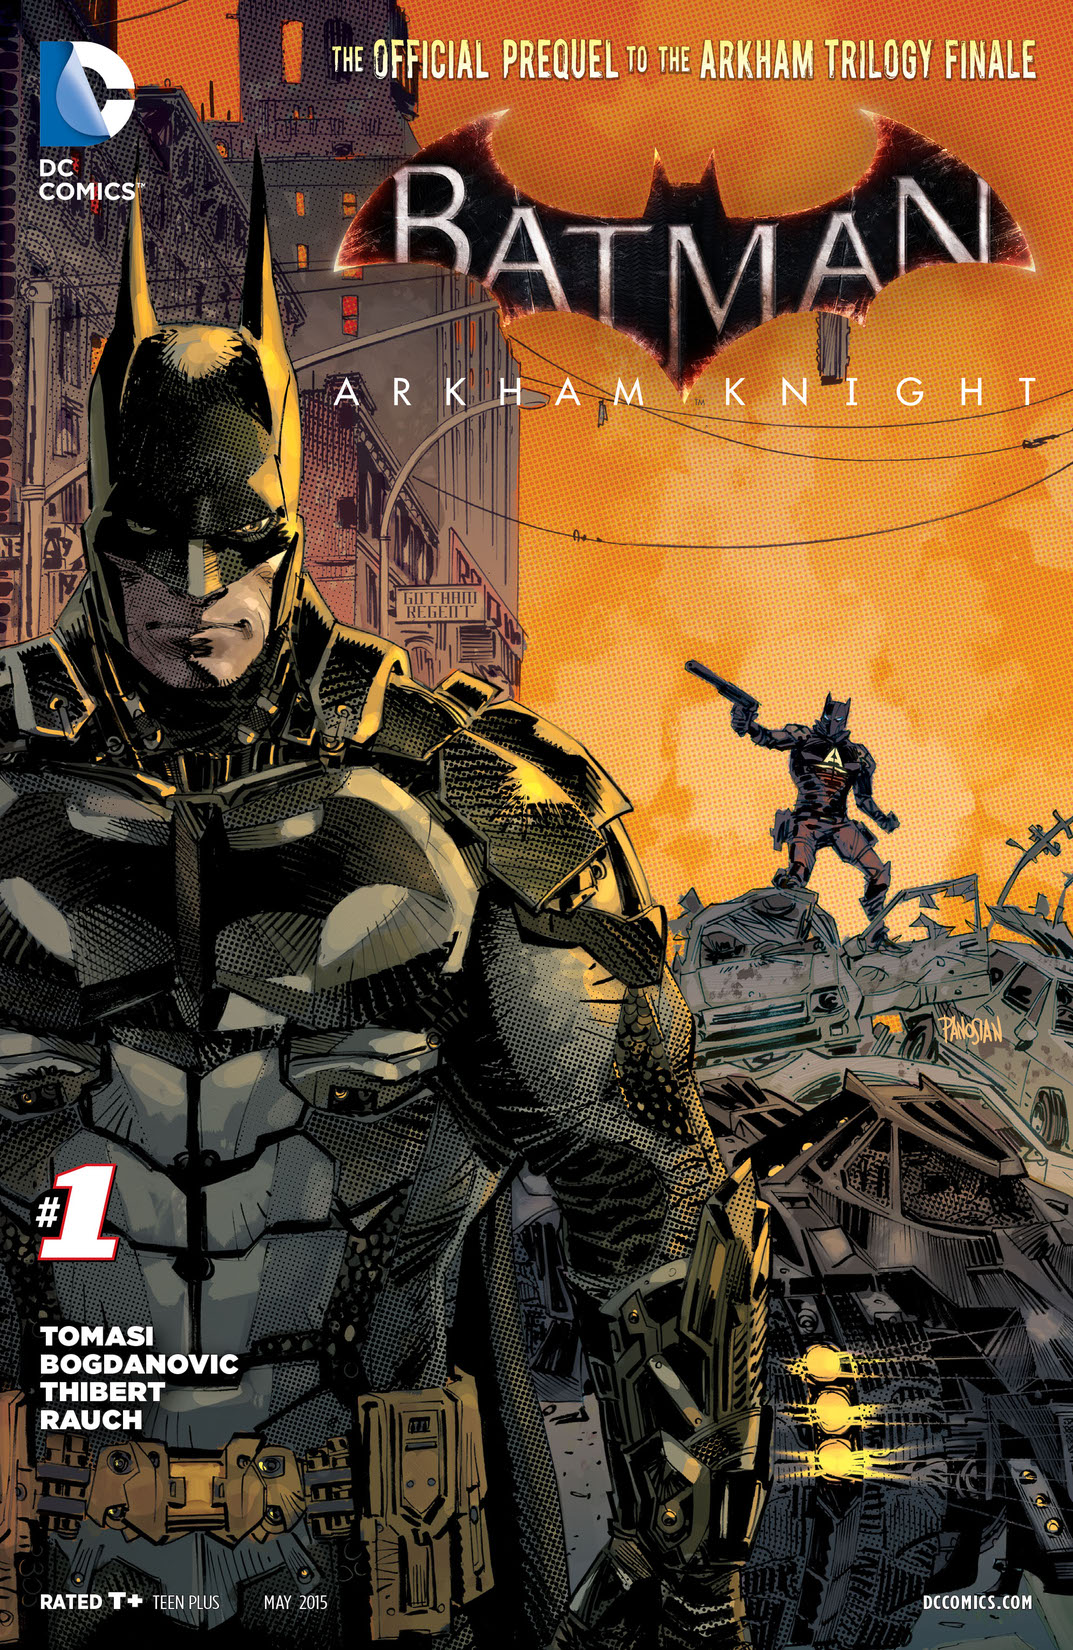 Batman: Arkham Knight #1 preview images